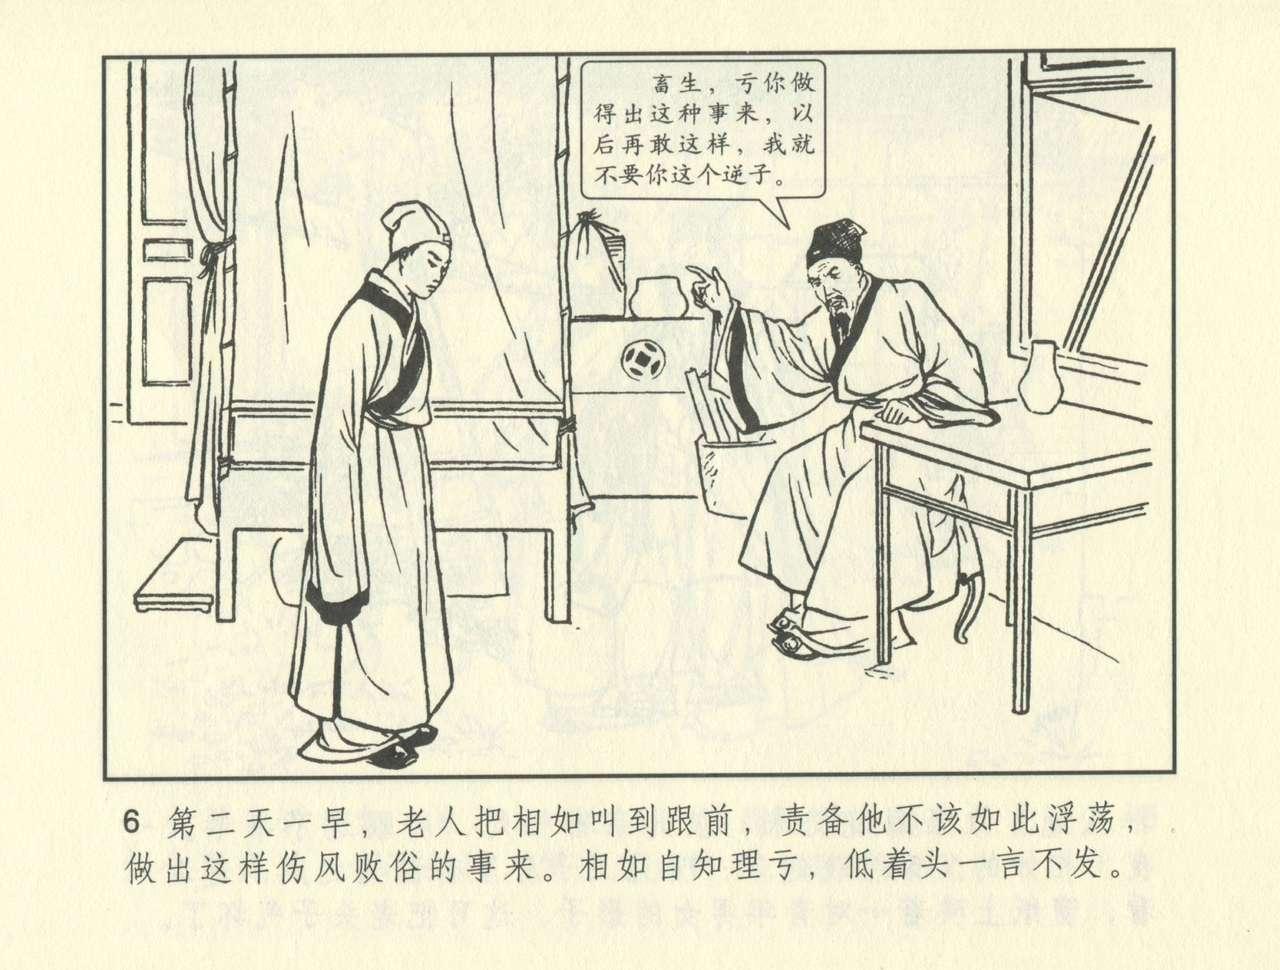 聊斋志异 张玮等绘 天津人民美术出版社 卷二十一 ~ 三十 346